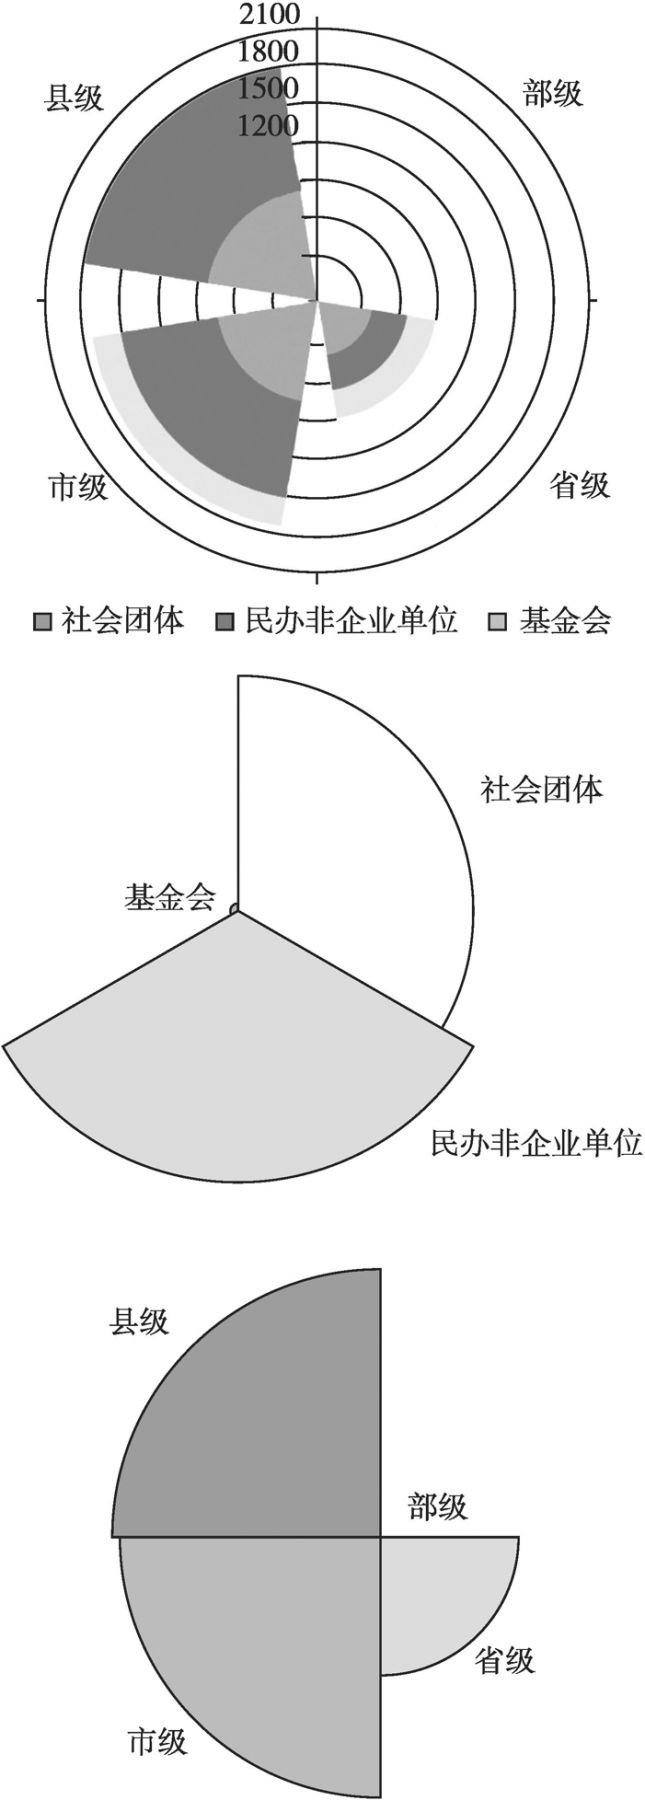 图4-5 广东省社会组织类别构成